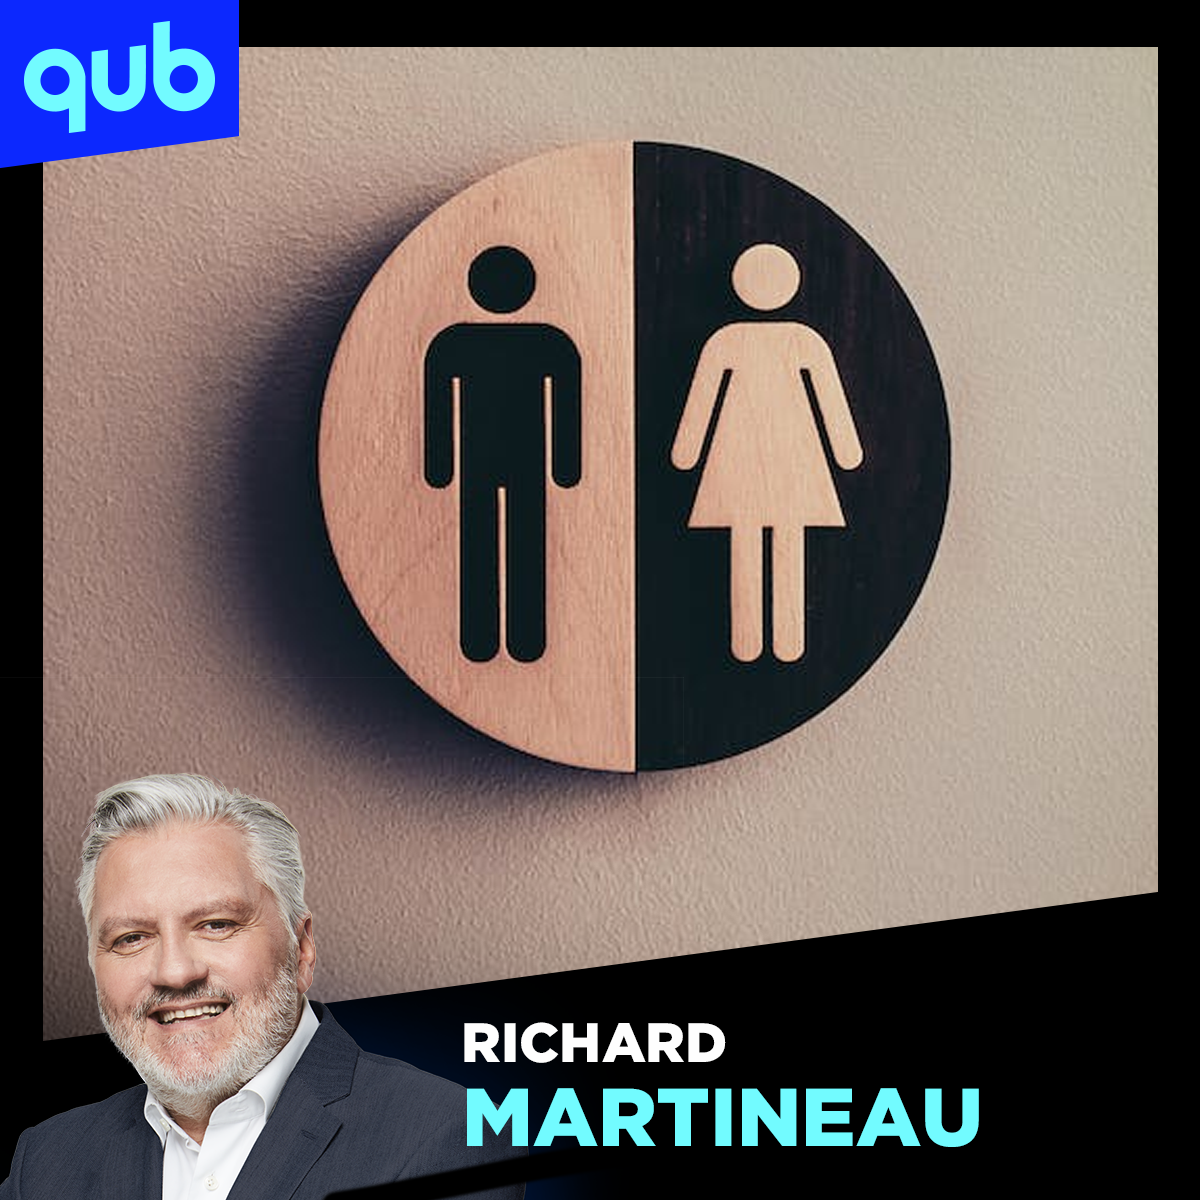 «Les hommes sont avantagés biologiquement», insiste Richard Martineau